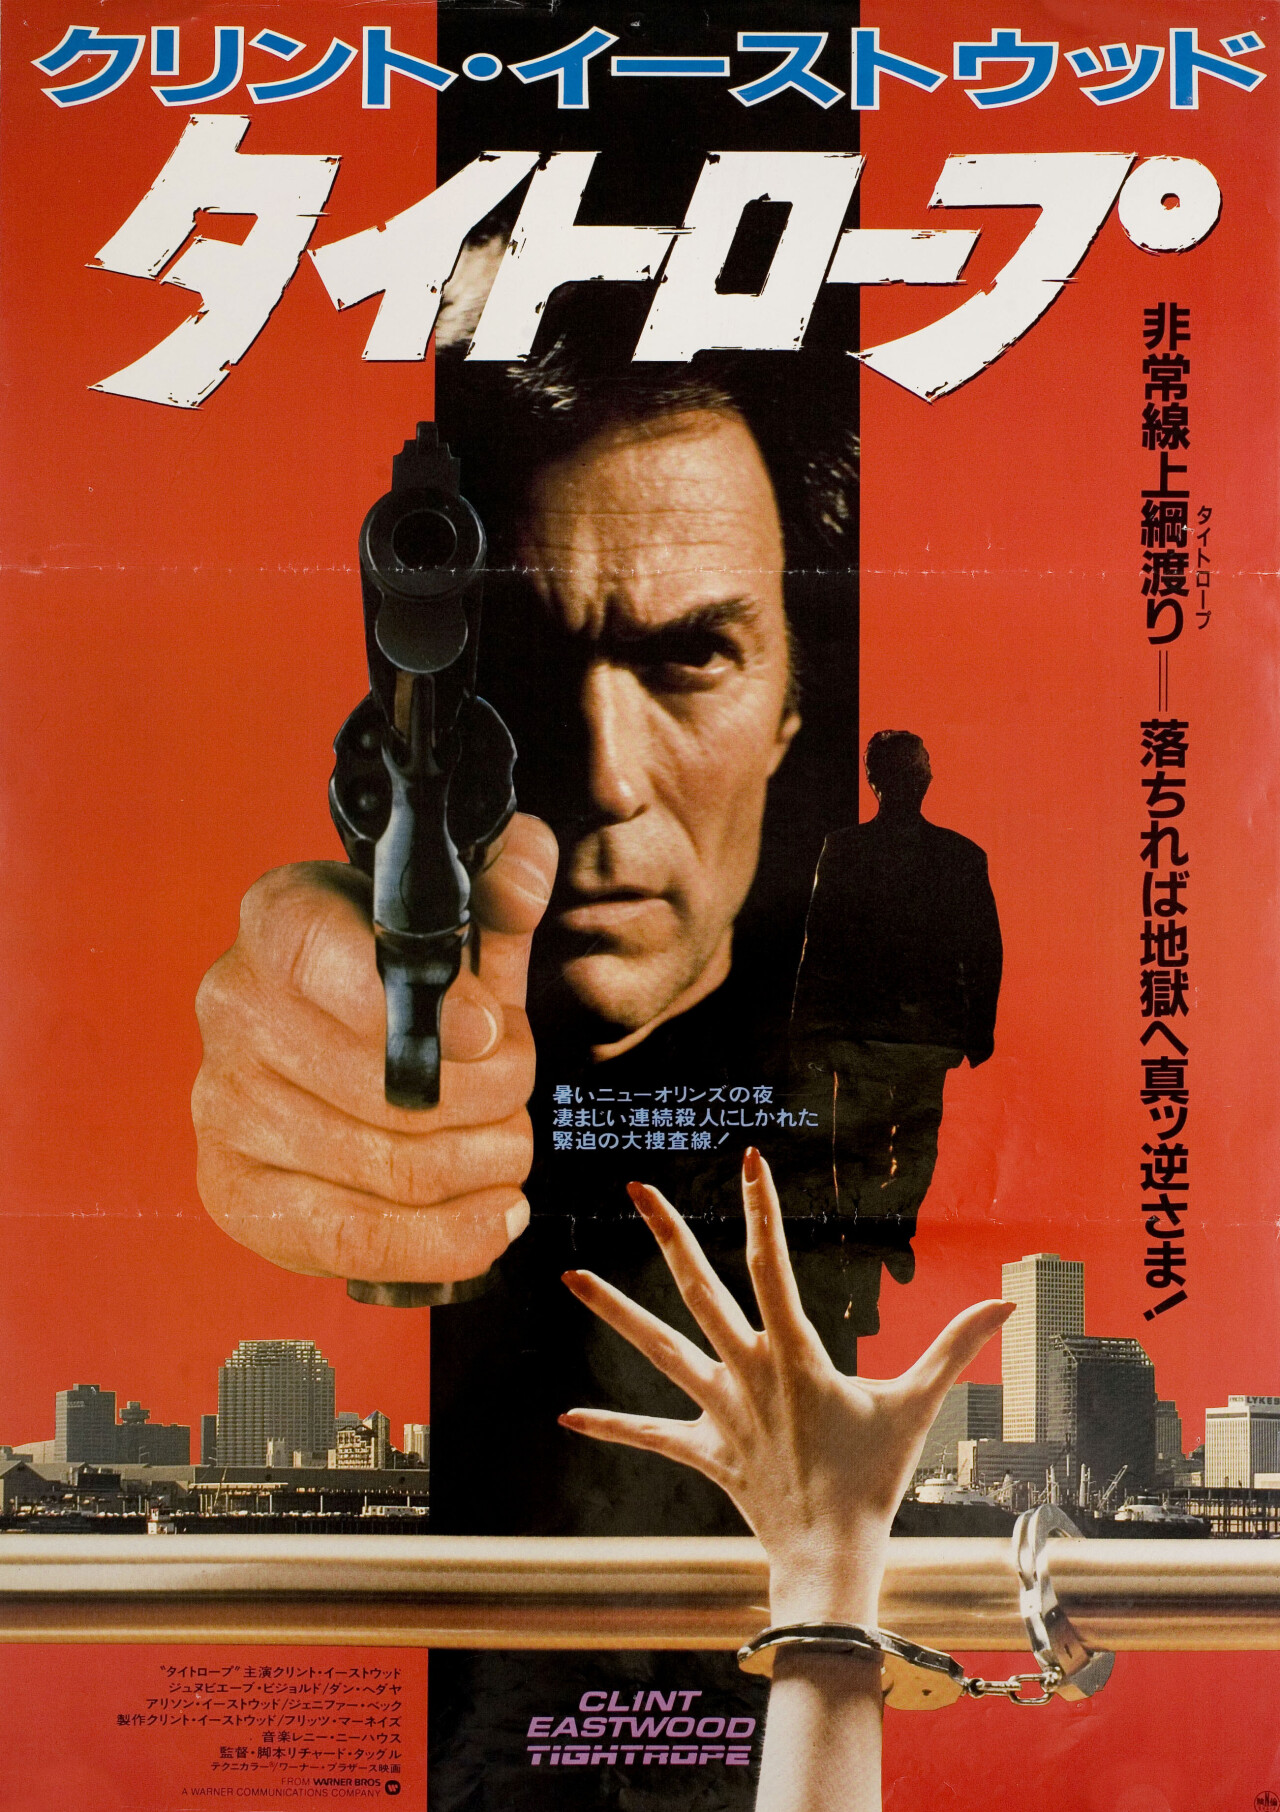 Петля (Tightrope, 1984), режиссёр Ричард Таггл, японский постер к фильму (графический дизайн, 1984 год)